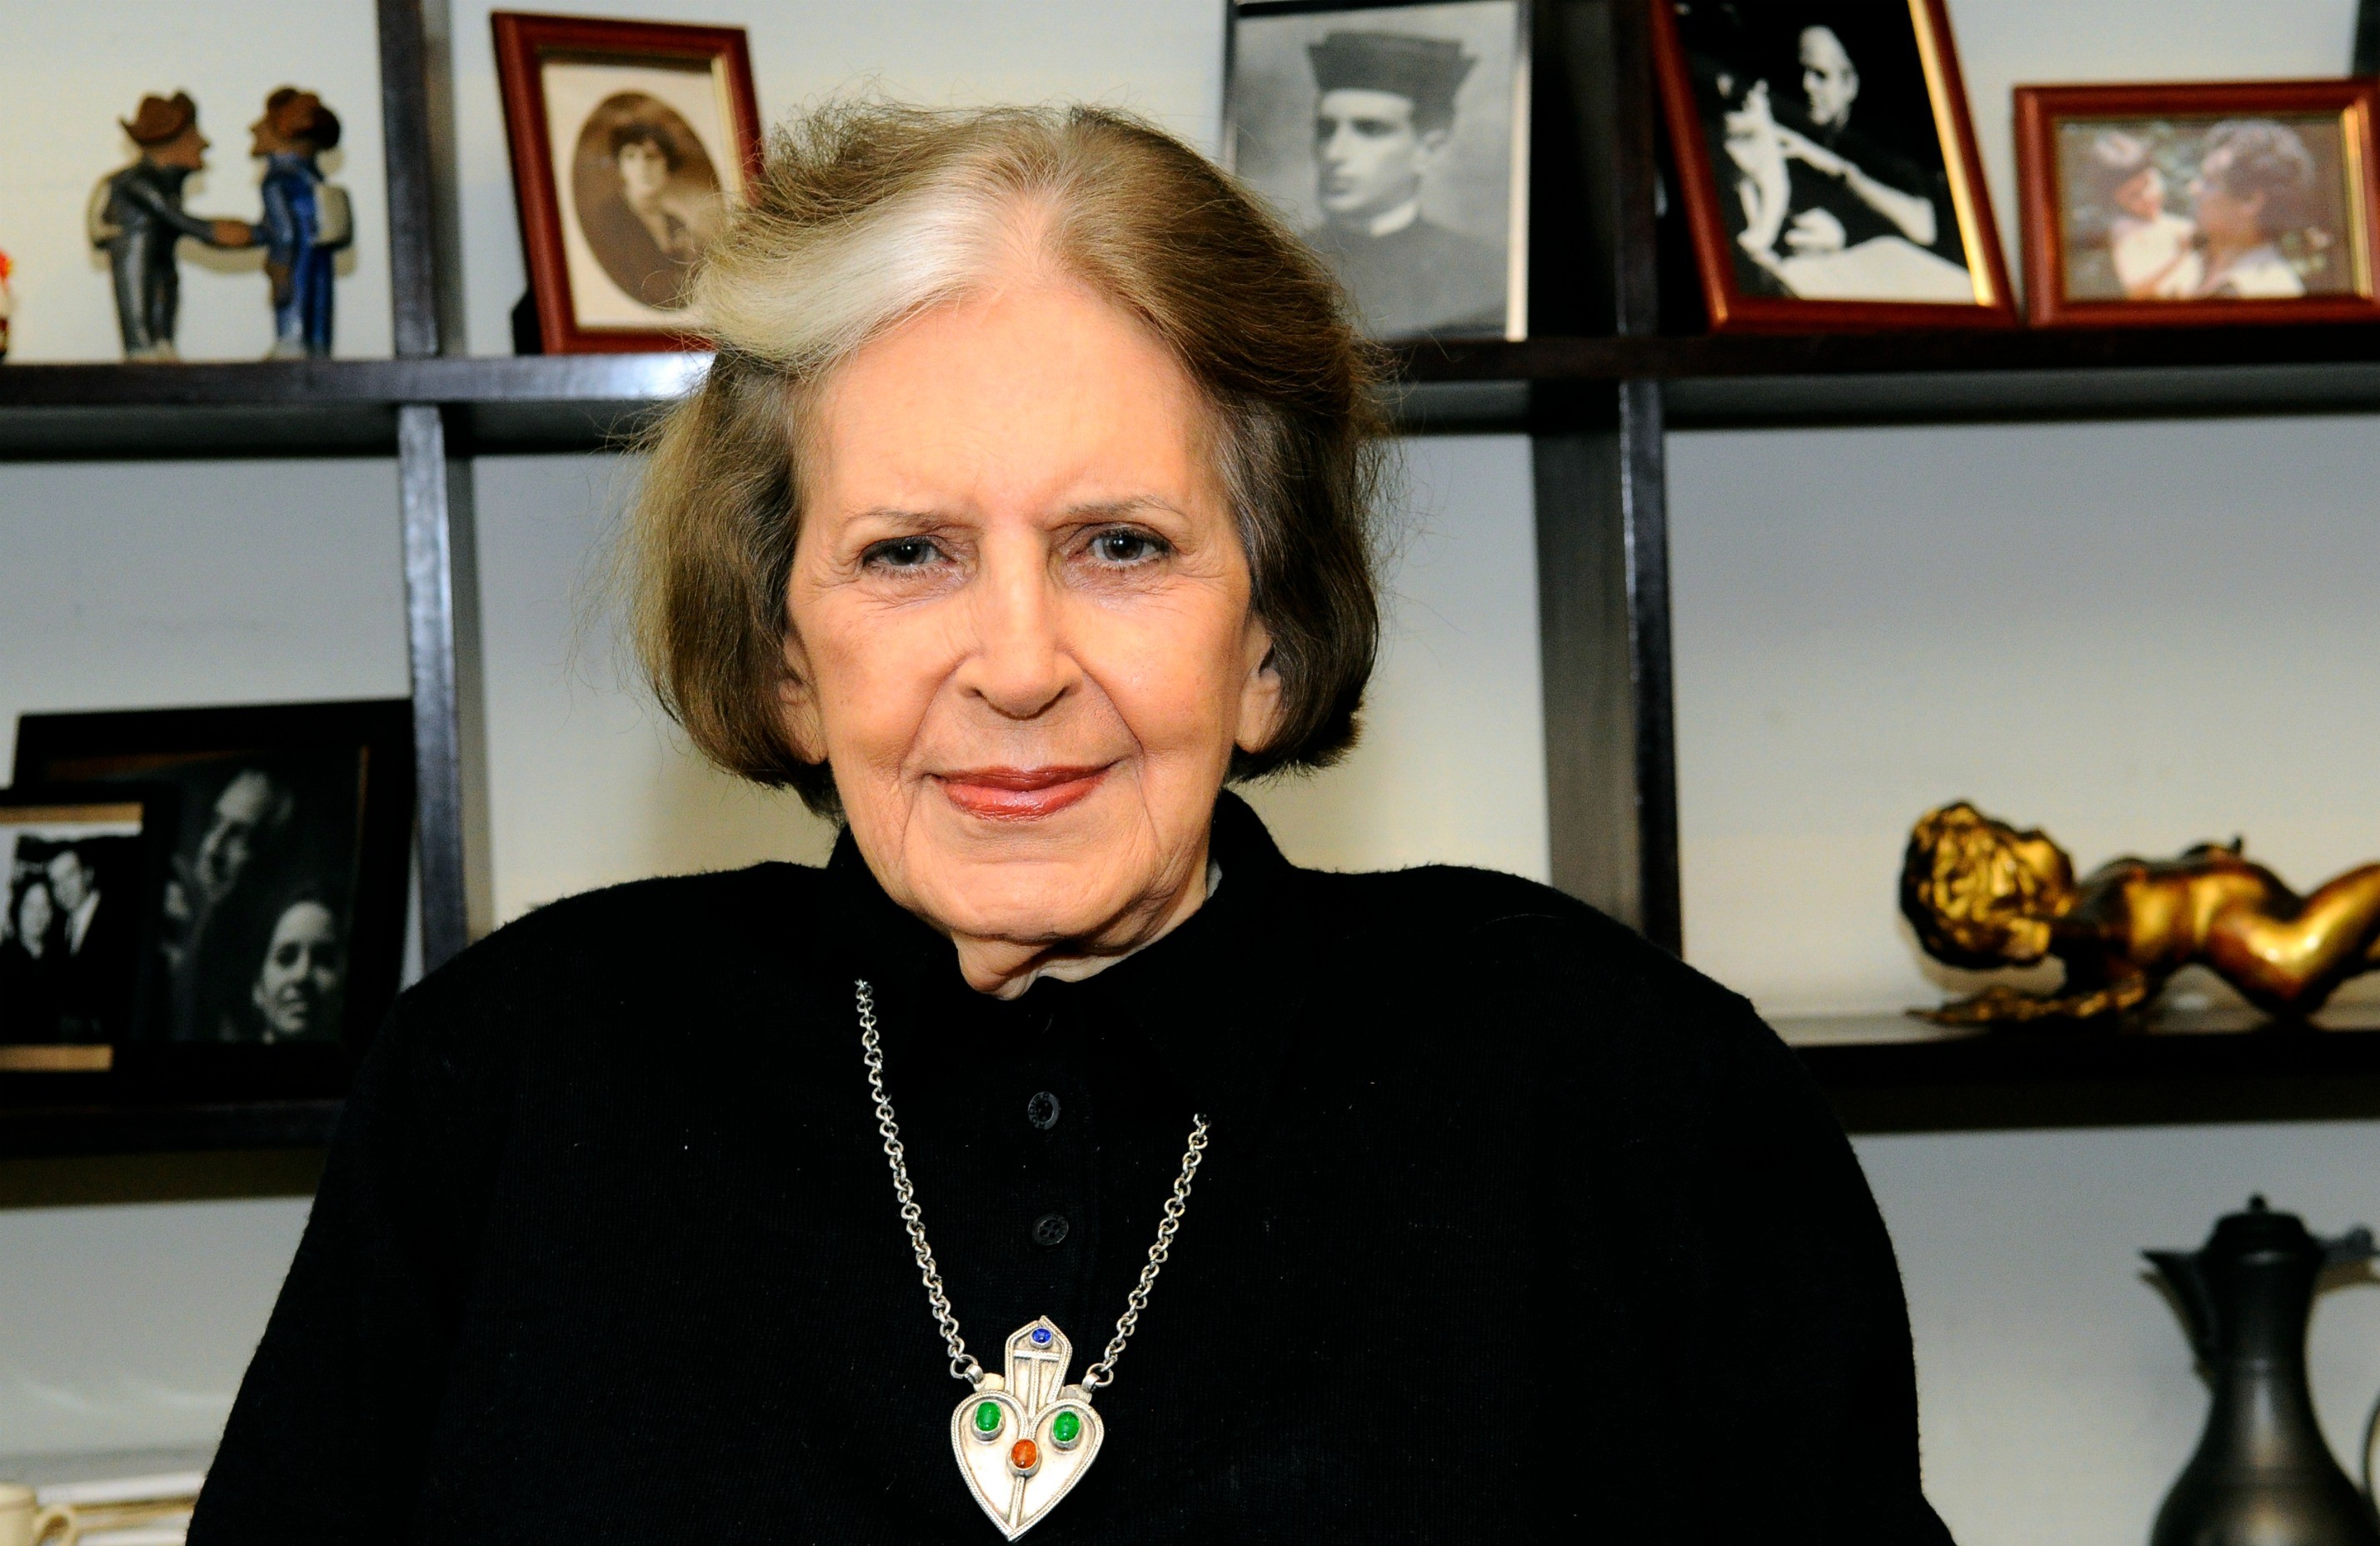 Morre, aos 98 anos, a escritora Lygia Fagundes Telles, acadêmica da ABL |  Ancelmo - O Globo